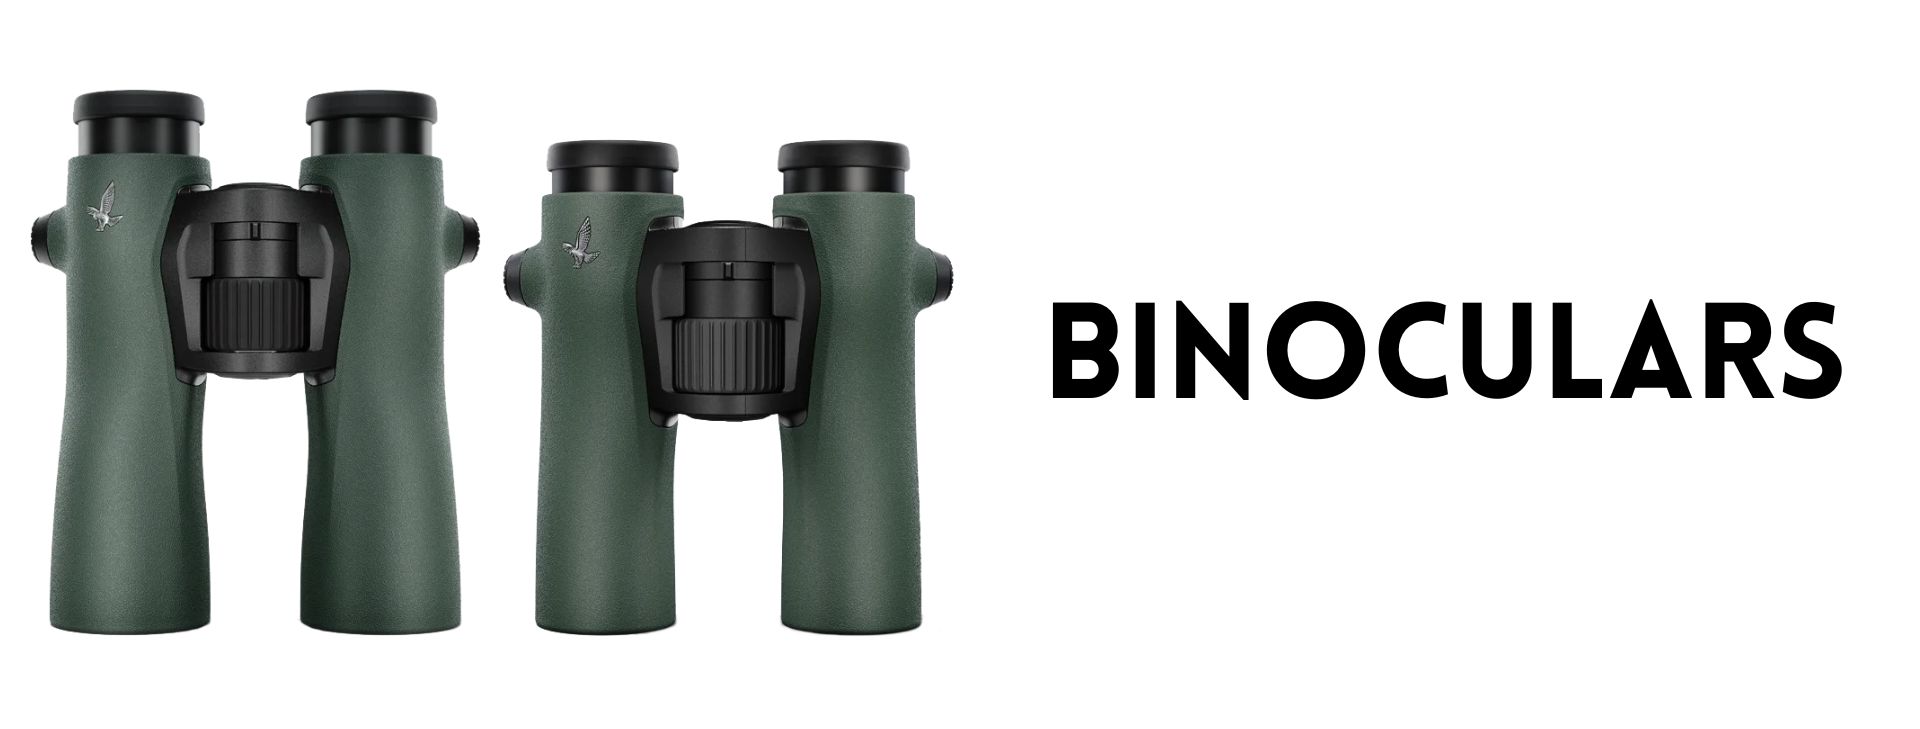 Swarovski NL Pure Binoculars at Ace Optics UK